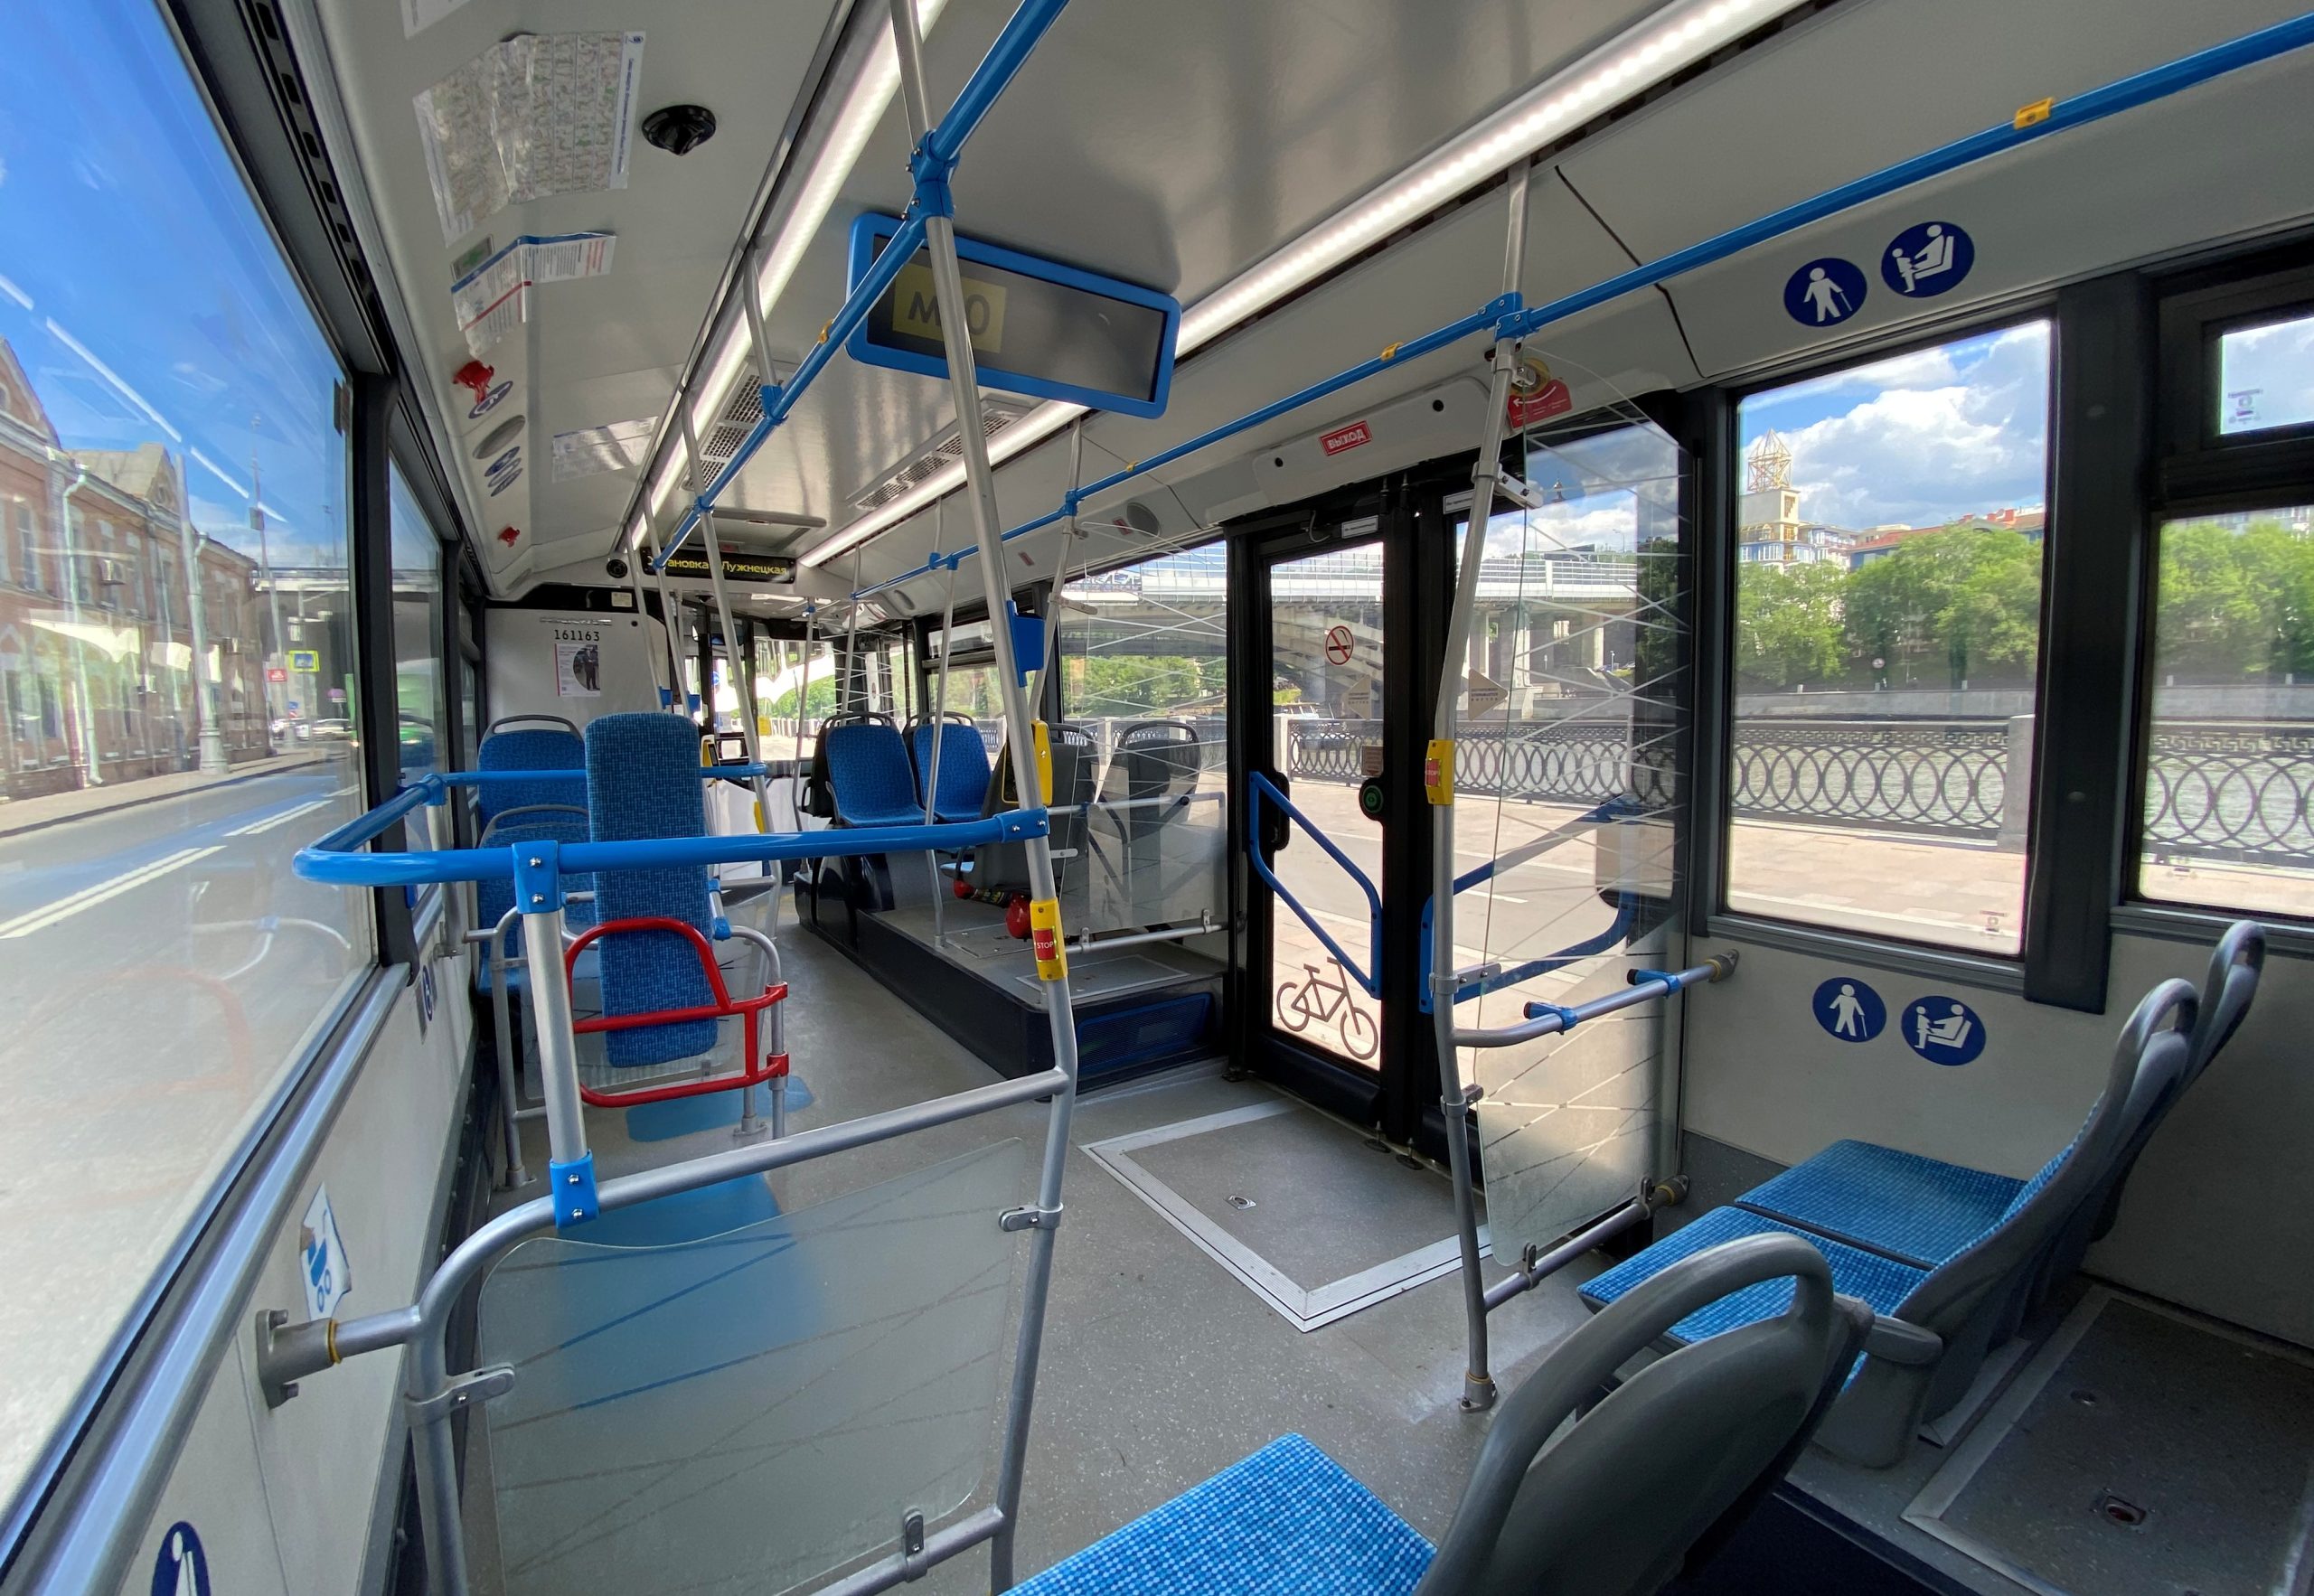 Бесплатные автобусы перевезли порядка 180 тысяч пассажиров в пасхальные праздники